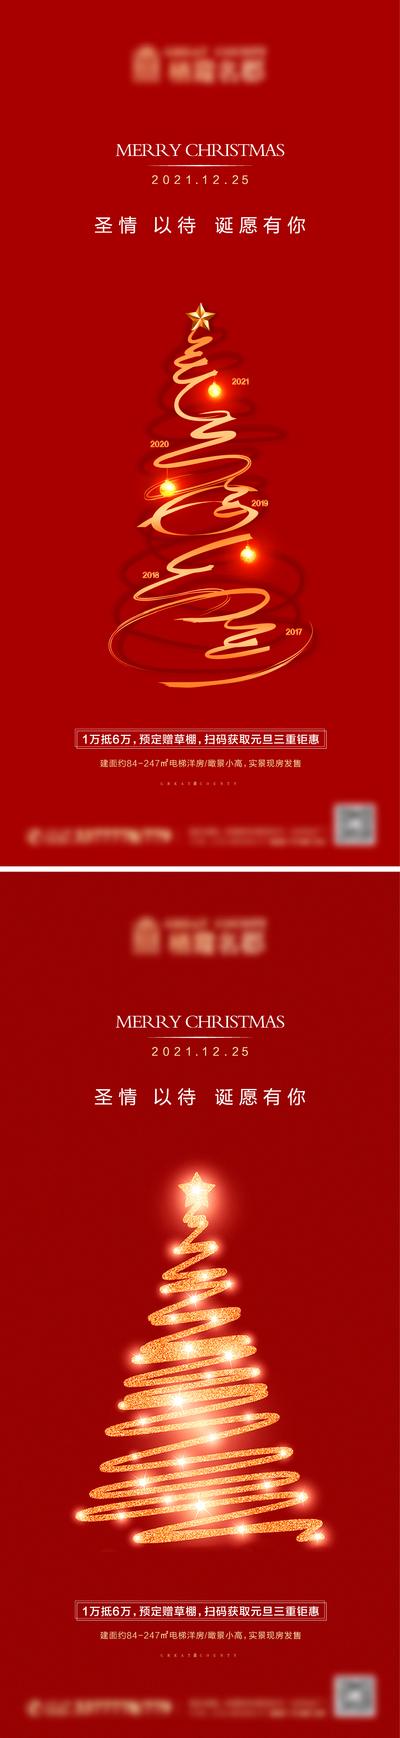 南门网 海报 房地产 公历节日 圣诞节 圣诞树 红金